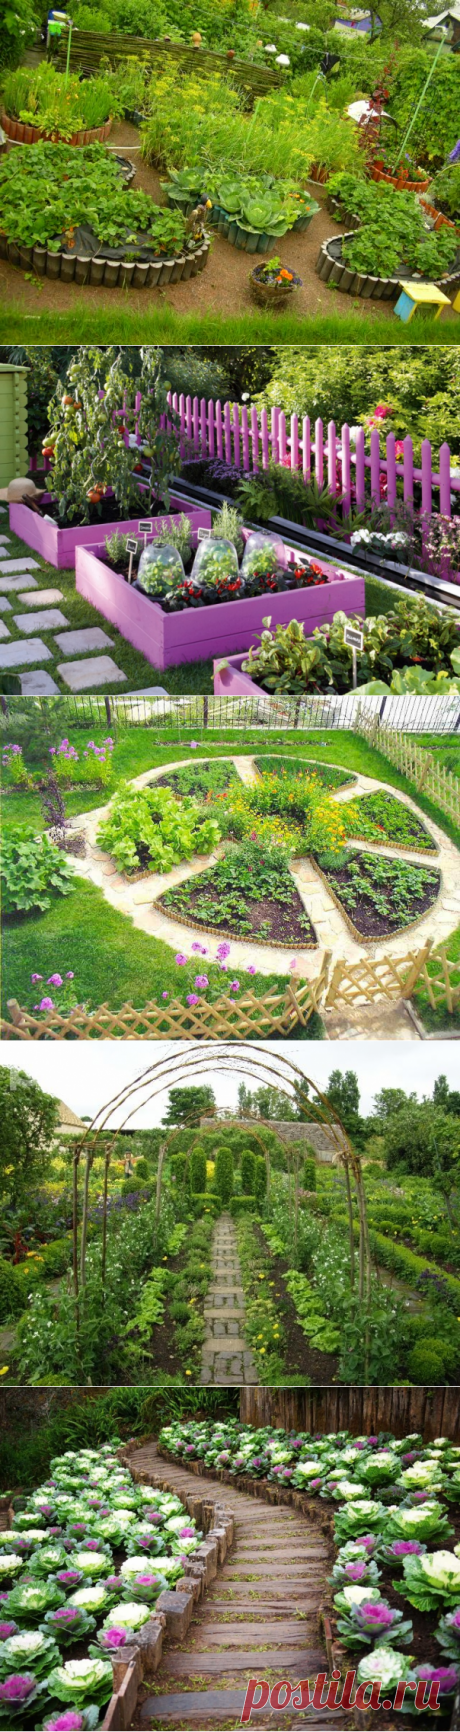 Лето на даче: 25 красивых идей обустройства овощных садов